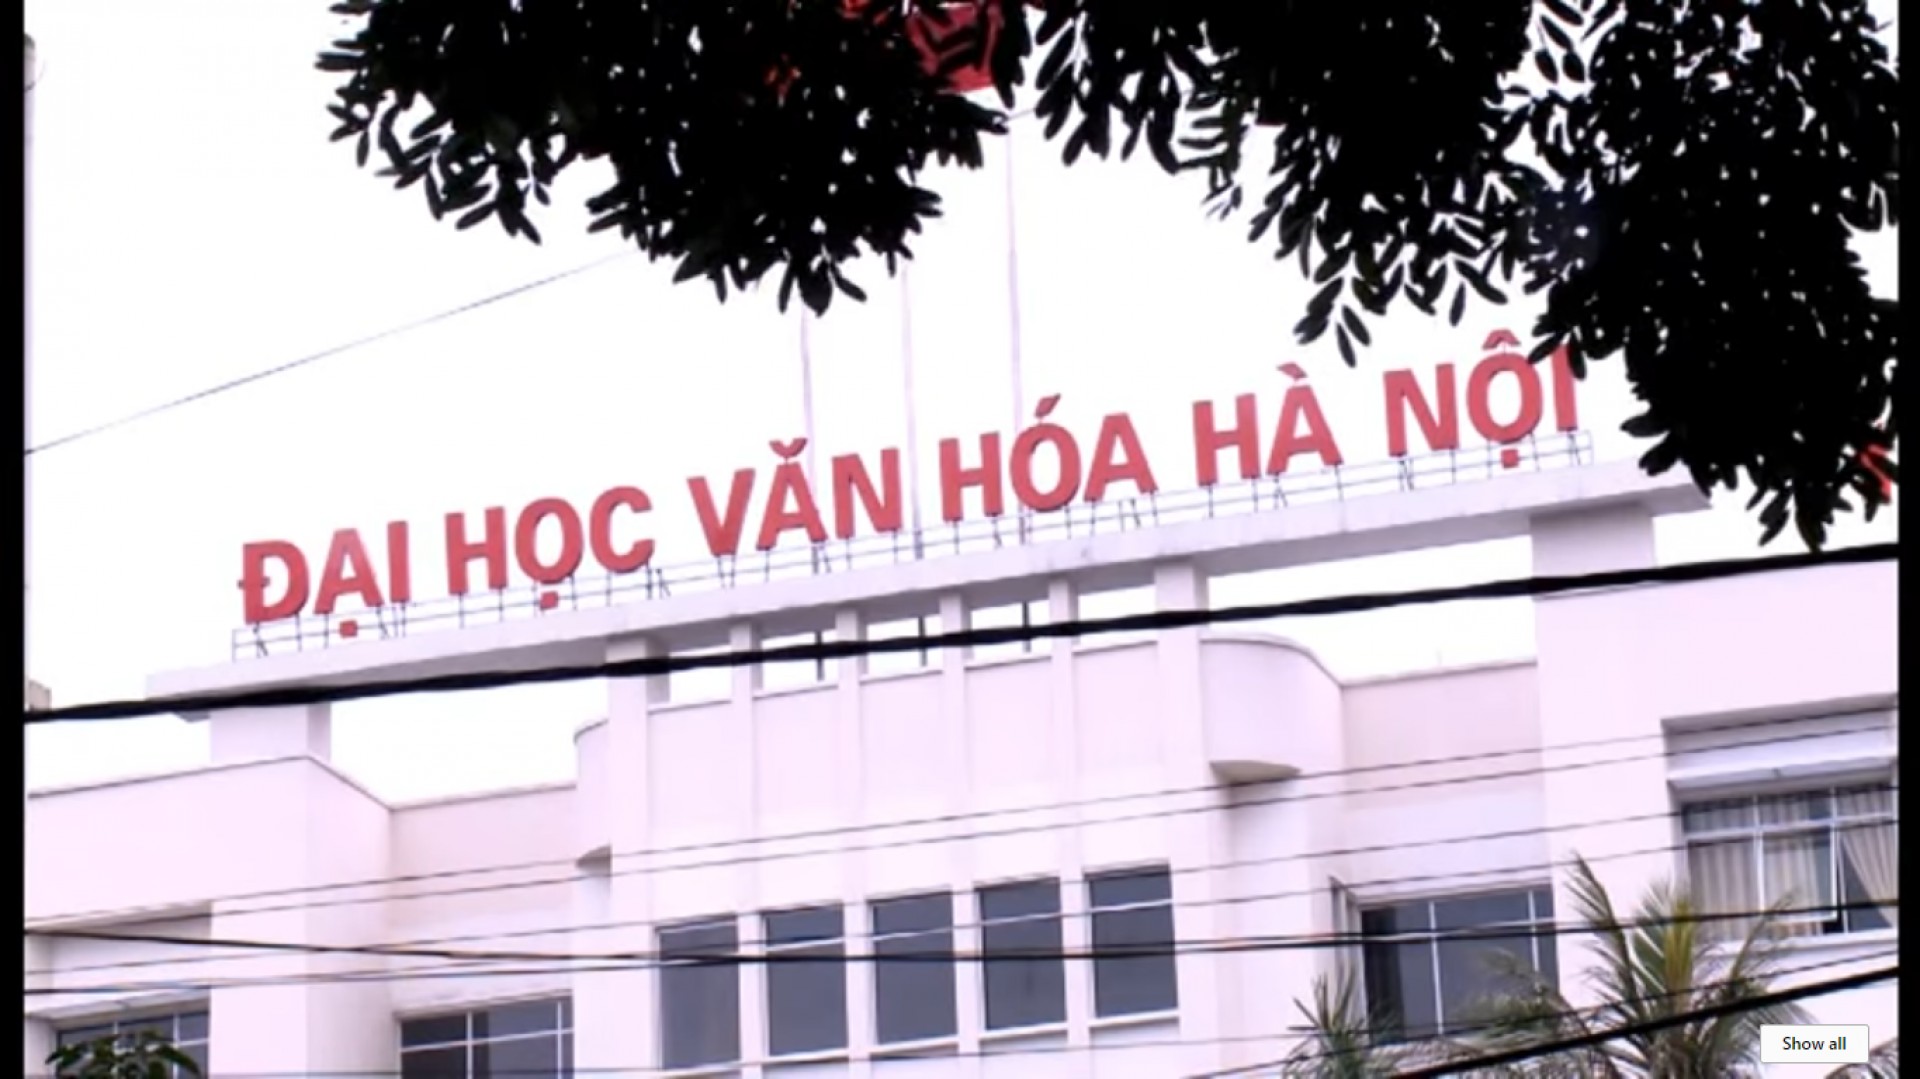 Khám phá cơ sở vật chất trường Đại học Văn hóa Hà Nội